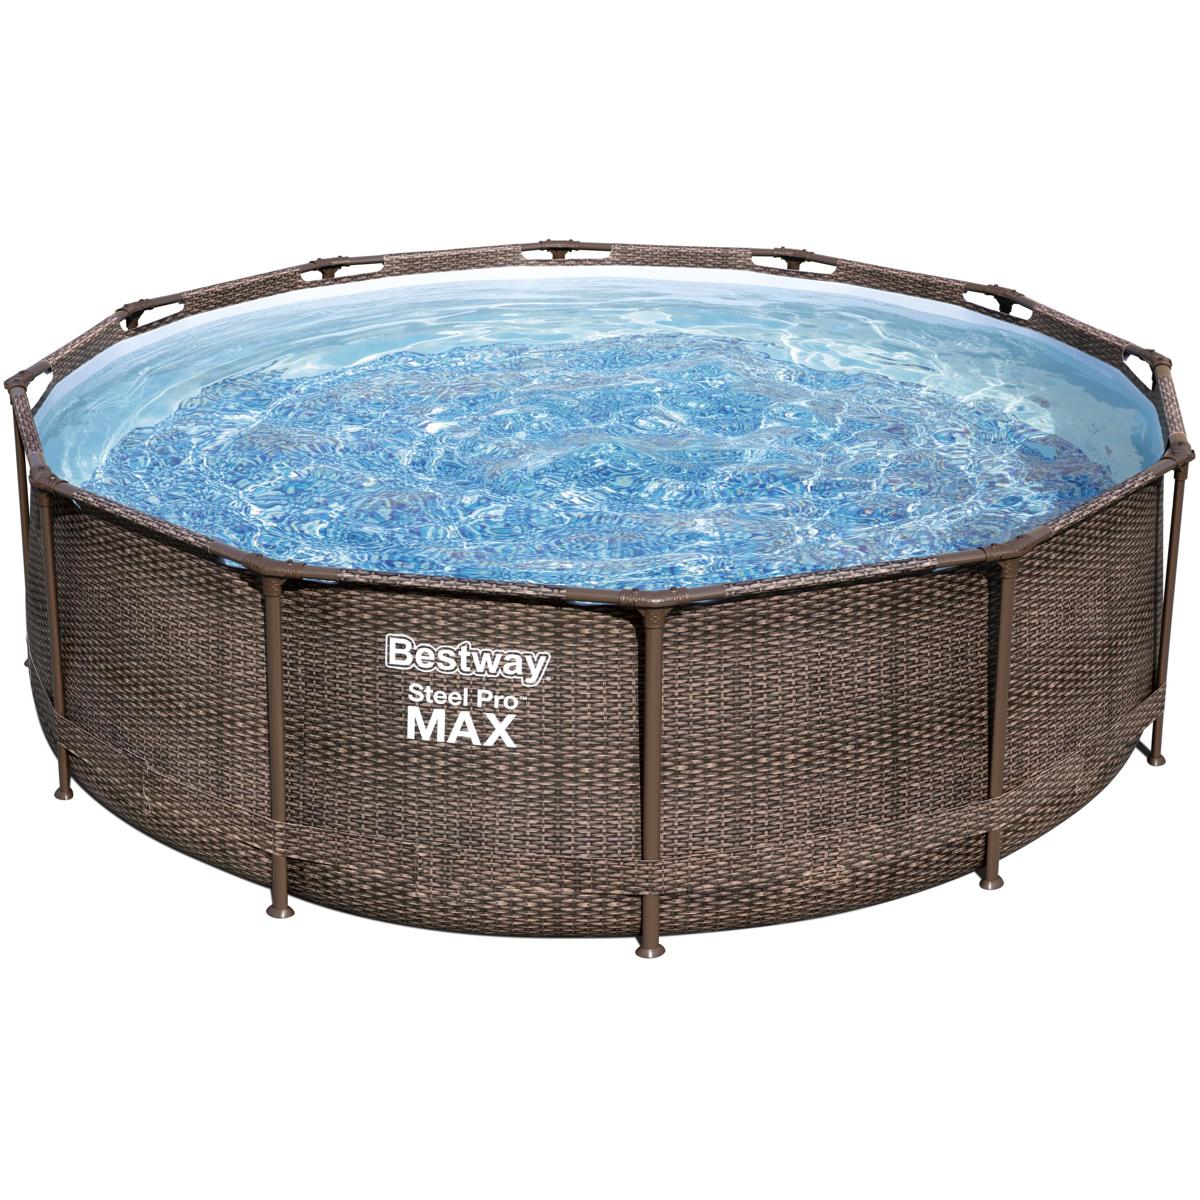 Bestway Steel Pro Max Frame Pool Set, rund, inkl. Filterpumpe, 366x100cm,  Rattanoptik braun bei Camping Wagner Campingzubehör